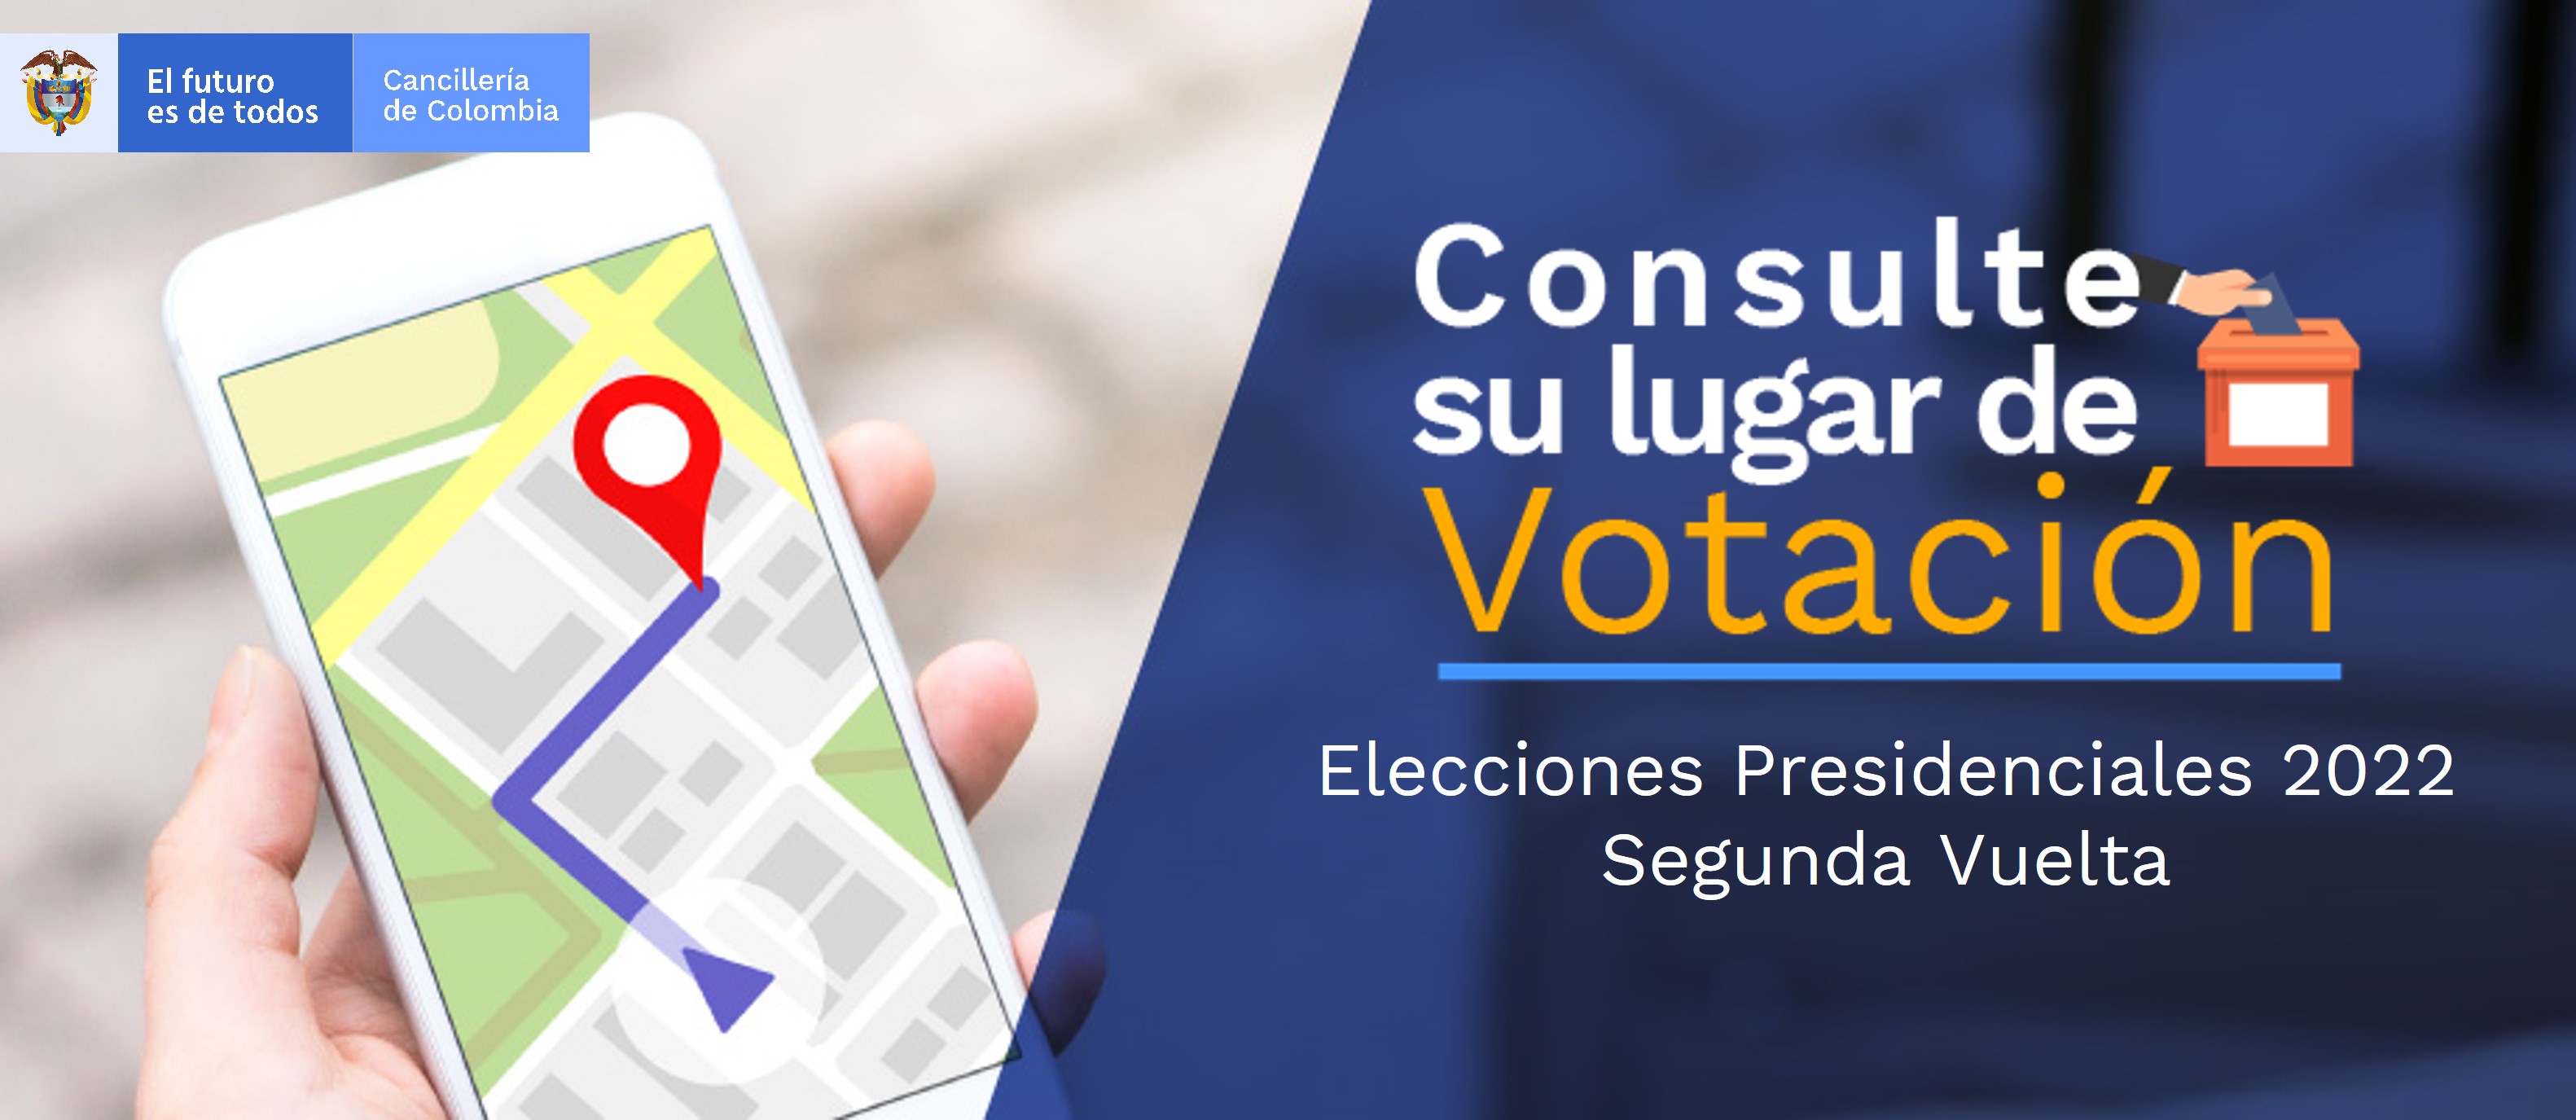 Cancillería informa a colombianos en el exterior los puestos de votación  disponibles para la segunda vuelta de las Elecciones Presidenciales 2022 |  Cancillería